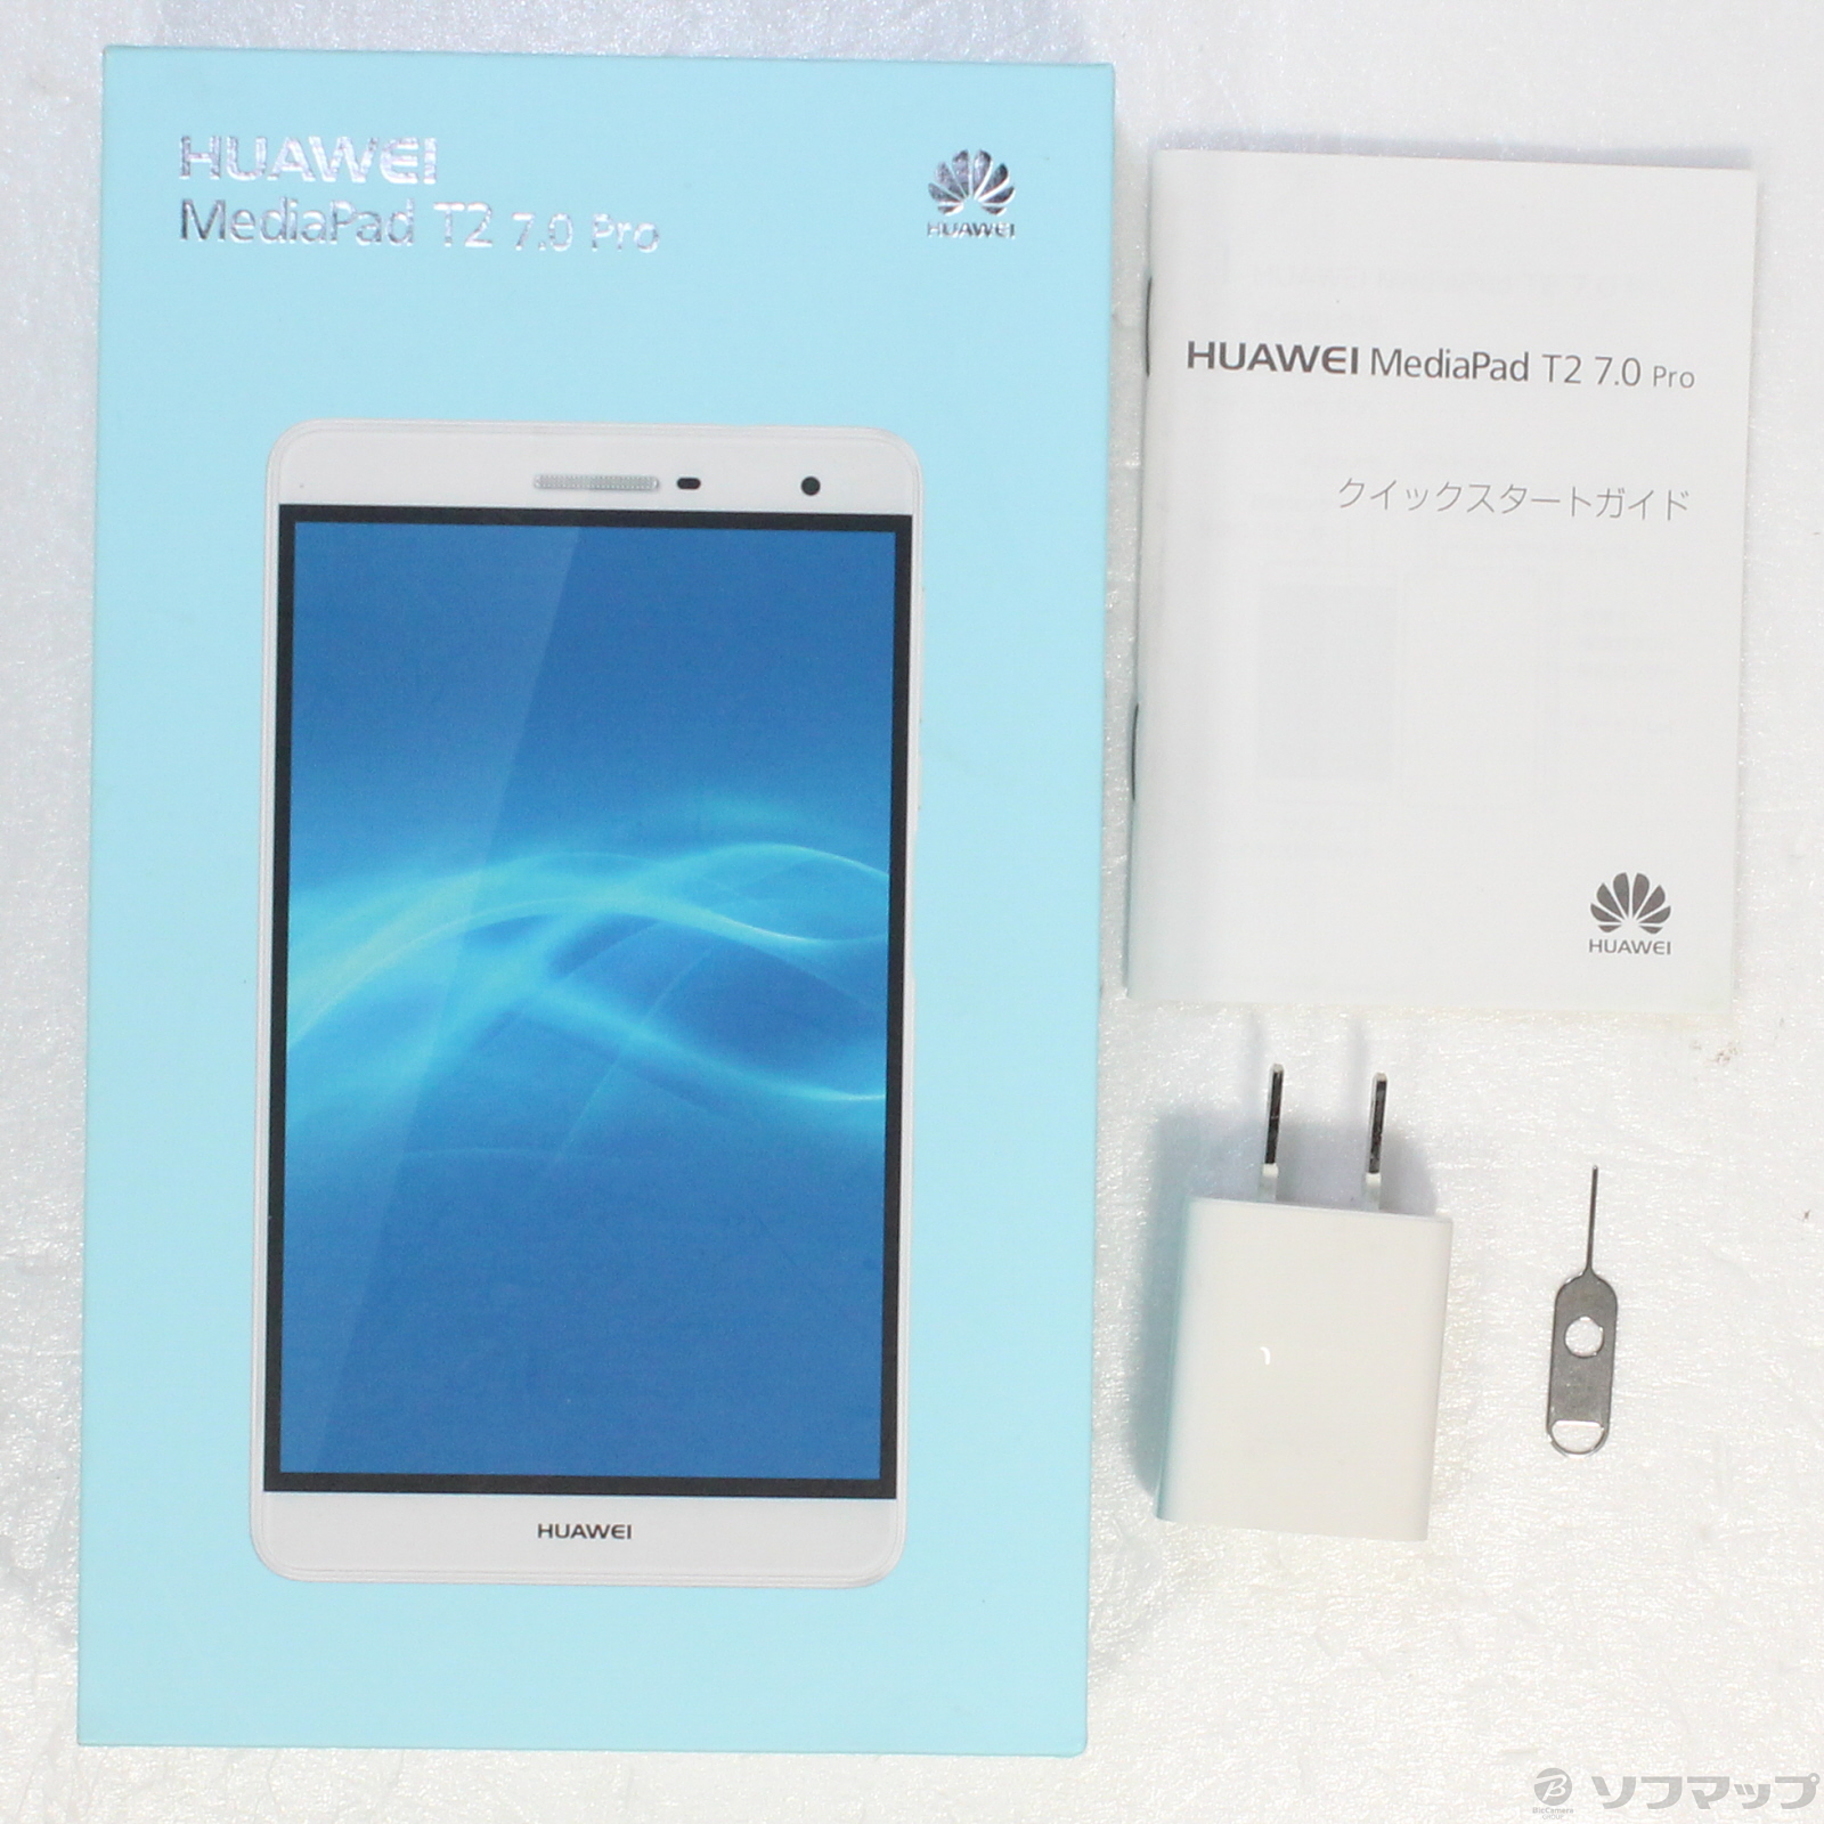 HUAWEI MediaPad T2 pro 7.0 ゴールド - タブレットPC